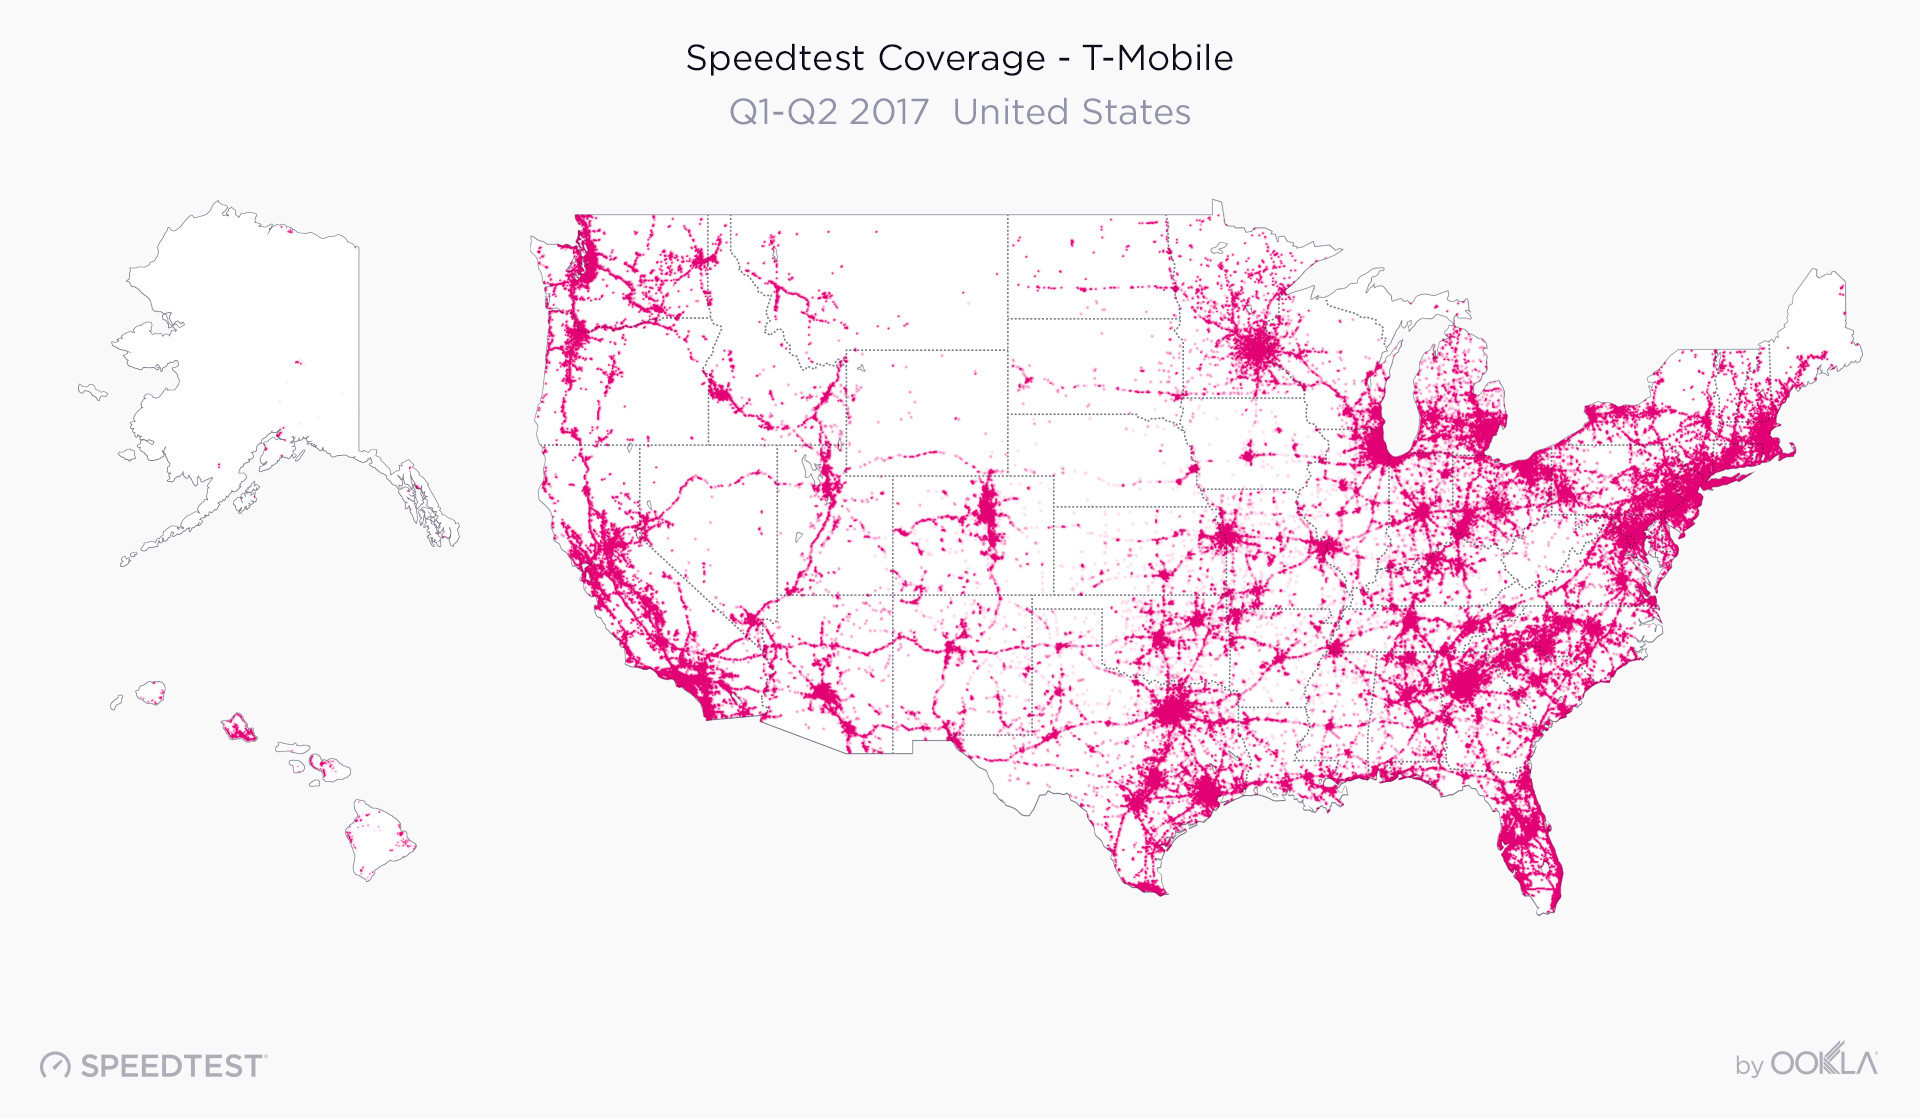 Verizon Wireless Coverage Map California Outline Us Mobile Coverage - Verizon Wireless Coverage Map California